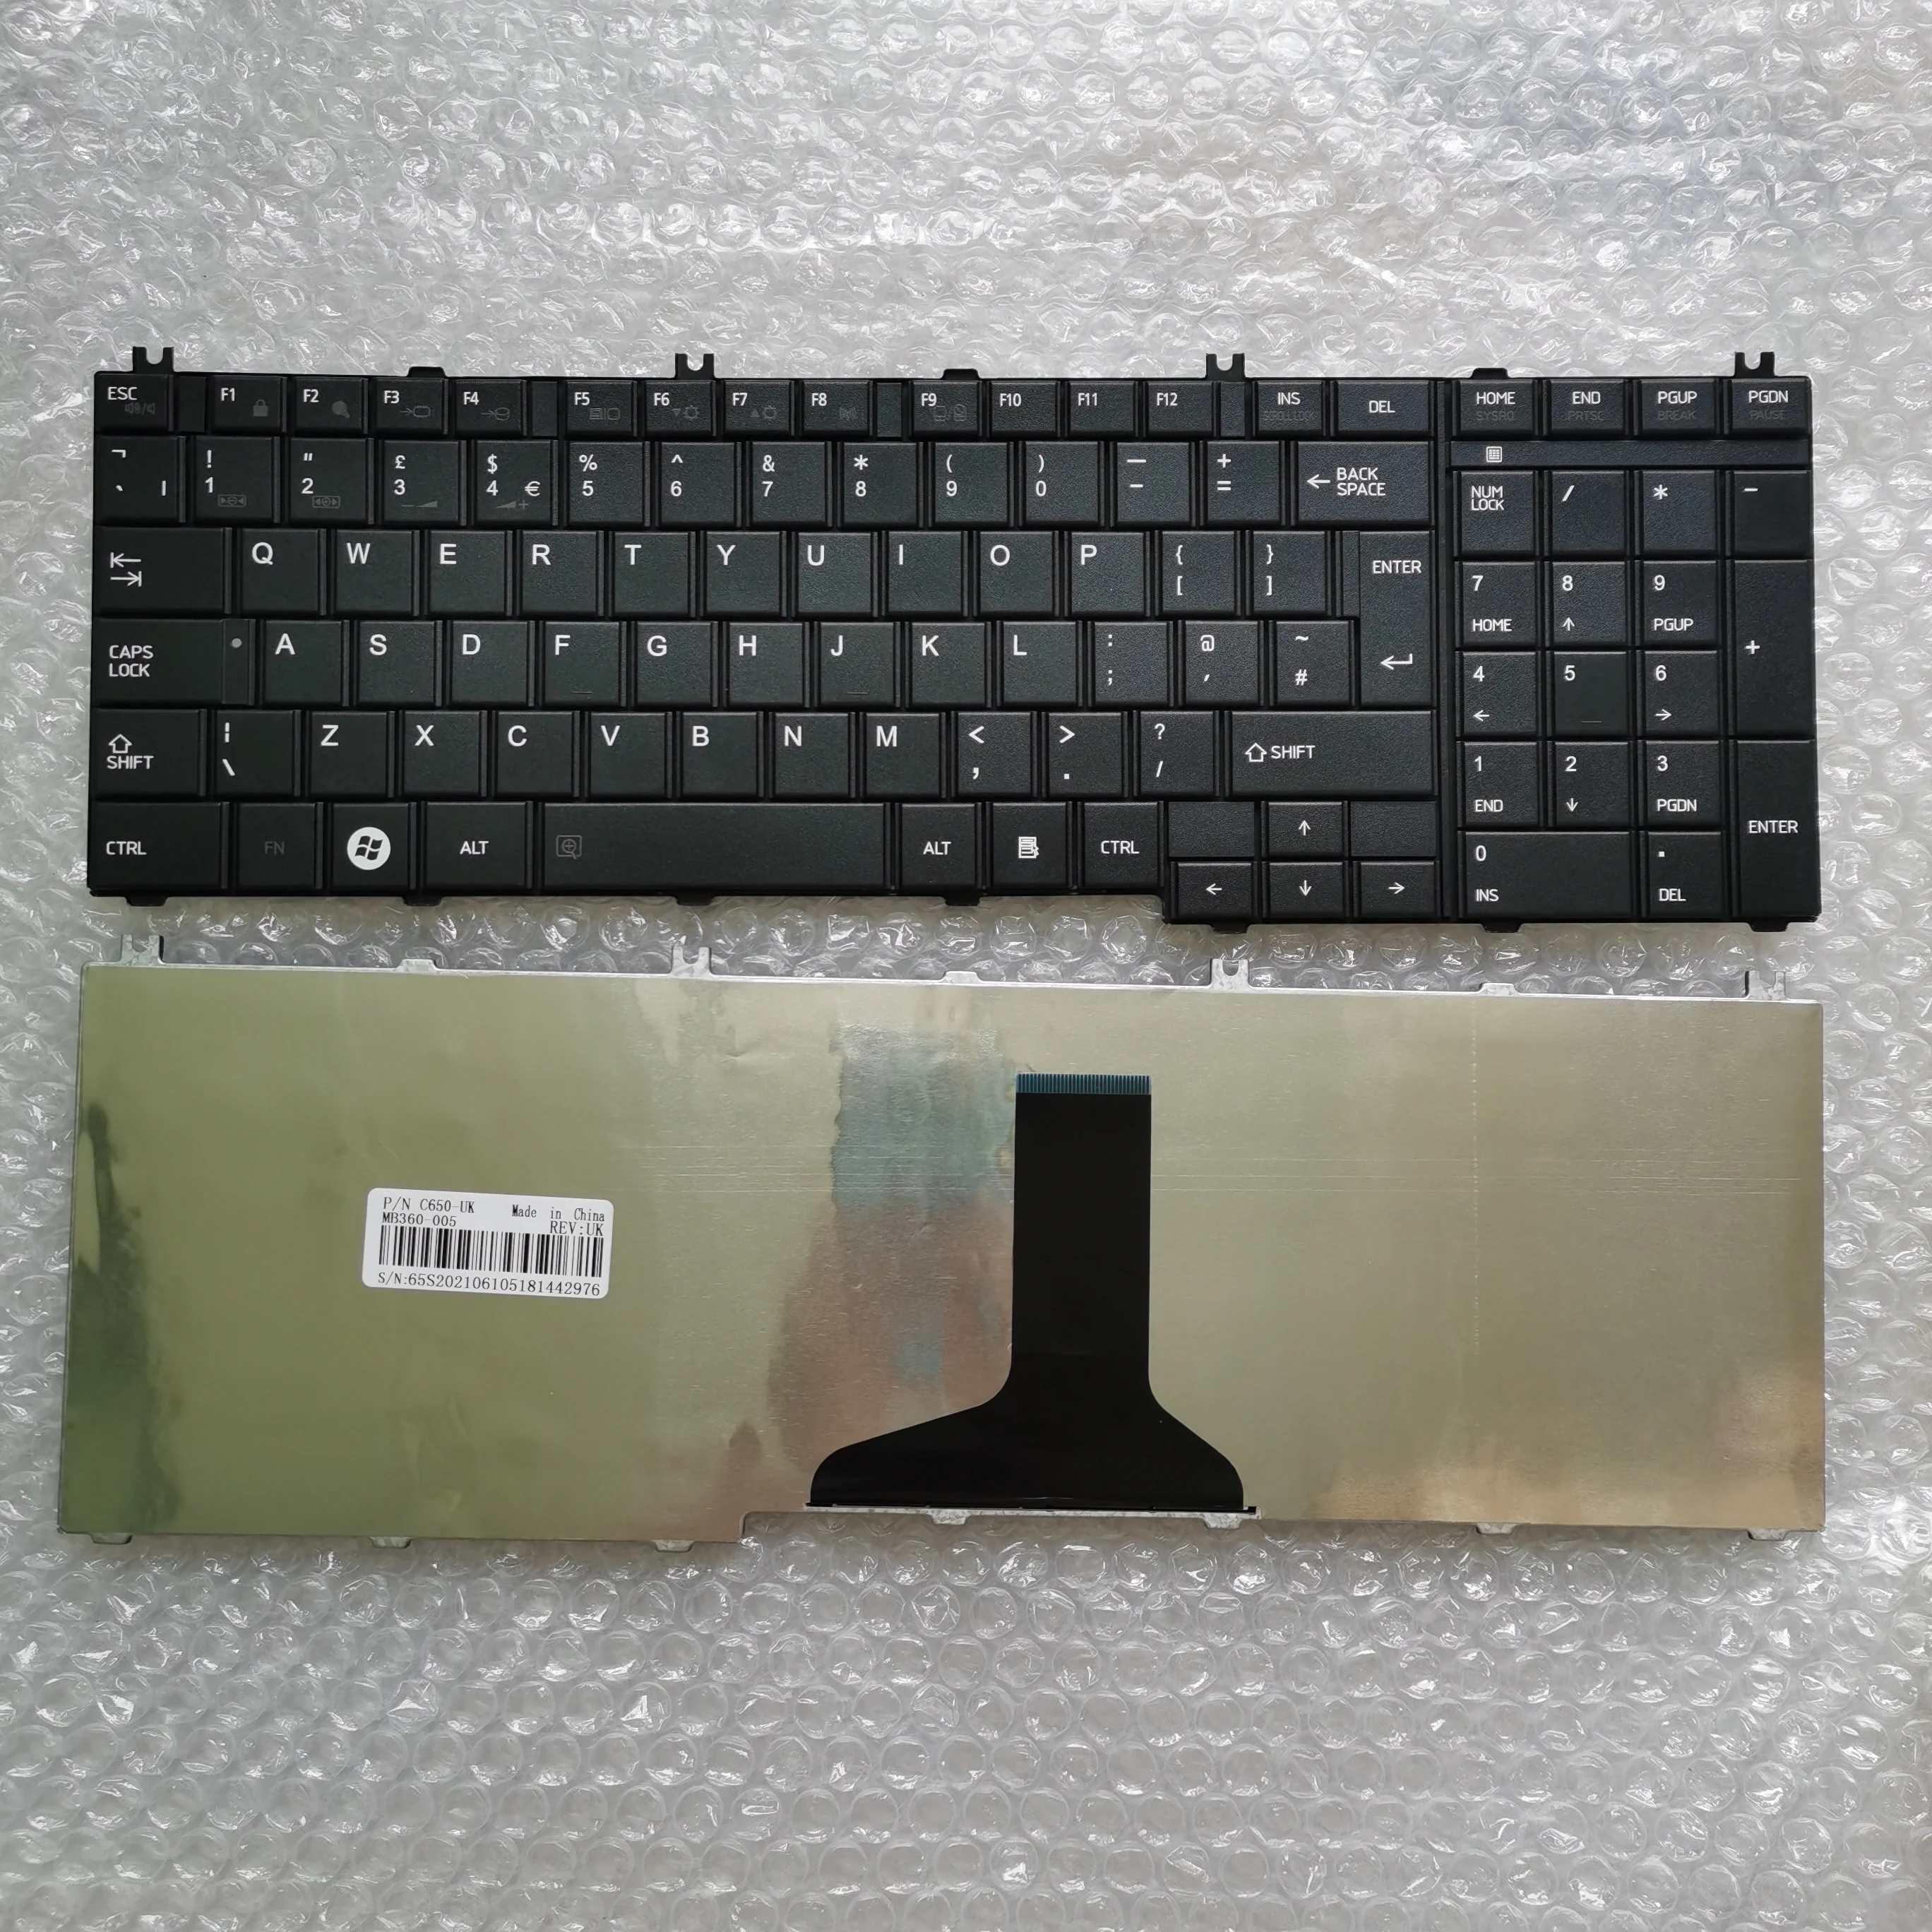 

Клавиатура XIN для ноутбука TOSHIBA Satellite C650 C650D C660 L650 L660 L655, Великобритания